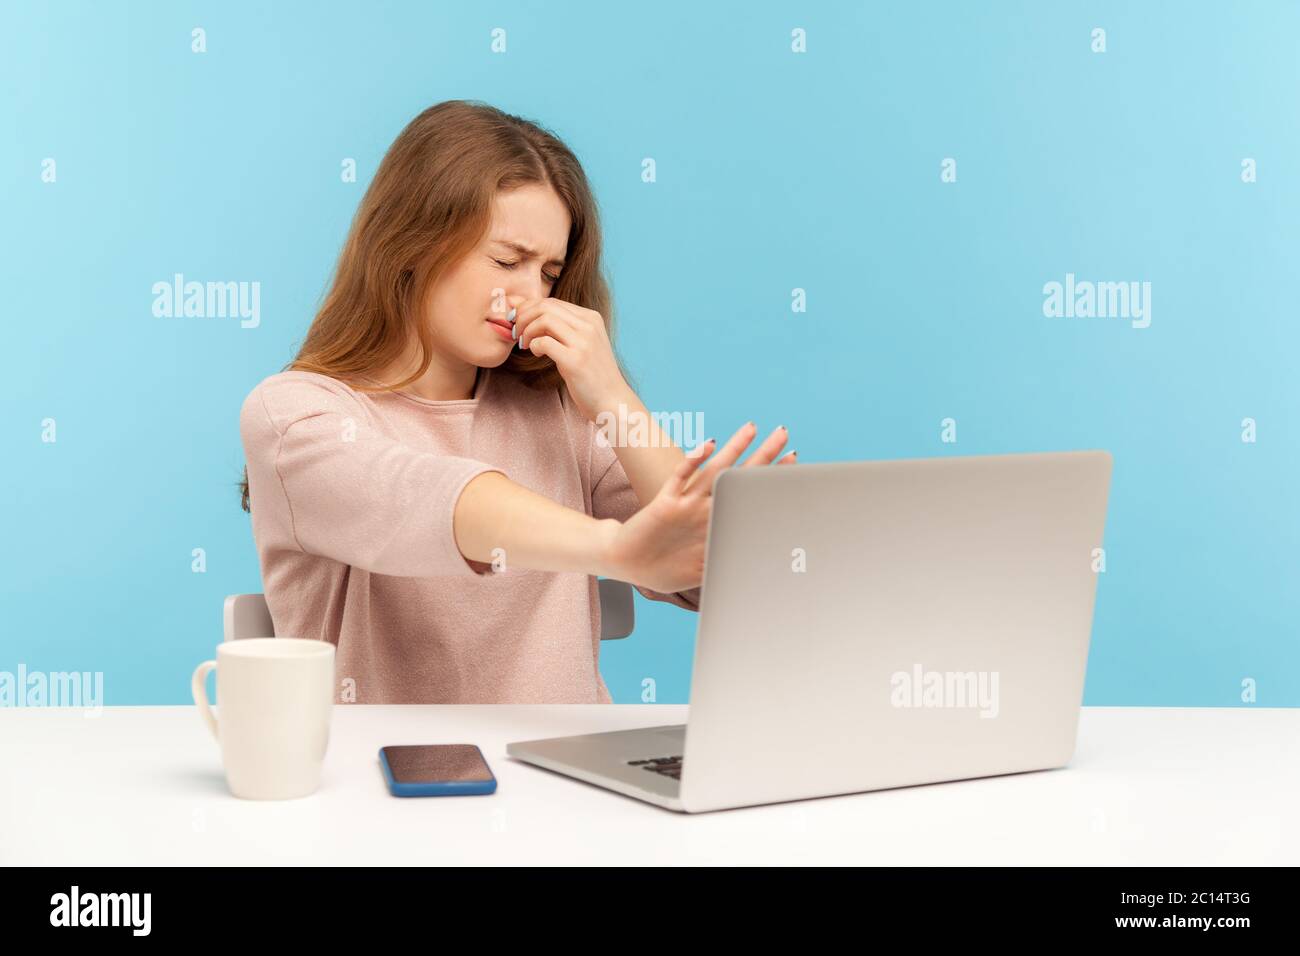 Schlechter Geruch. Unzufrieden Angestellter hält Atem, kneifen ihre Nase und gestikulieren stoppen am Laptop-Bildschirm, Metapher der stinkenden beschämenden Internet-conte Stockfoto